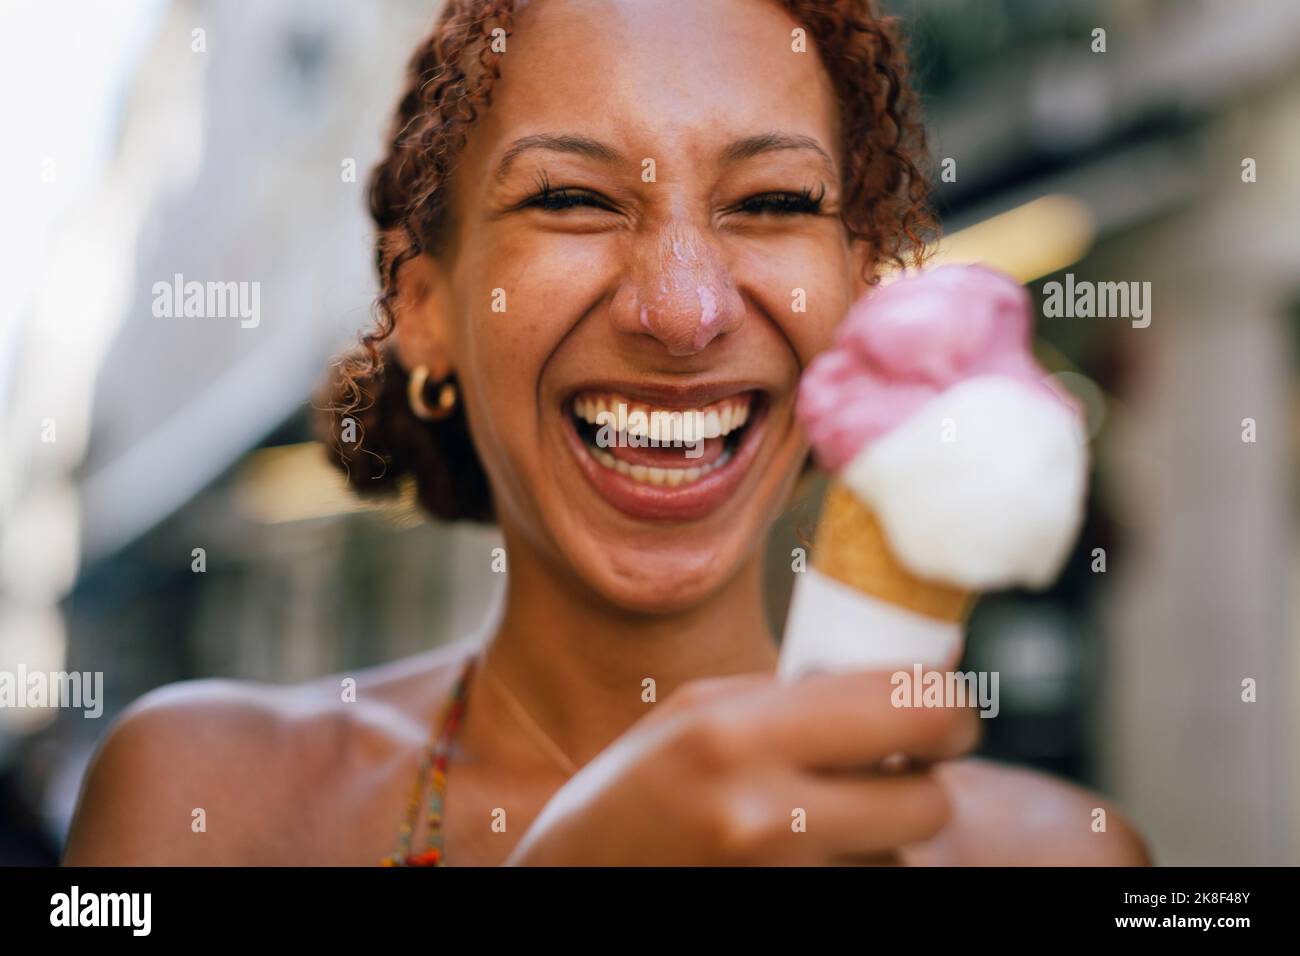 Fröhliche junge Frau, die Spaß mit Eis in der Hand hat Stockfoto